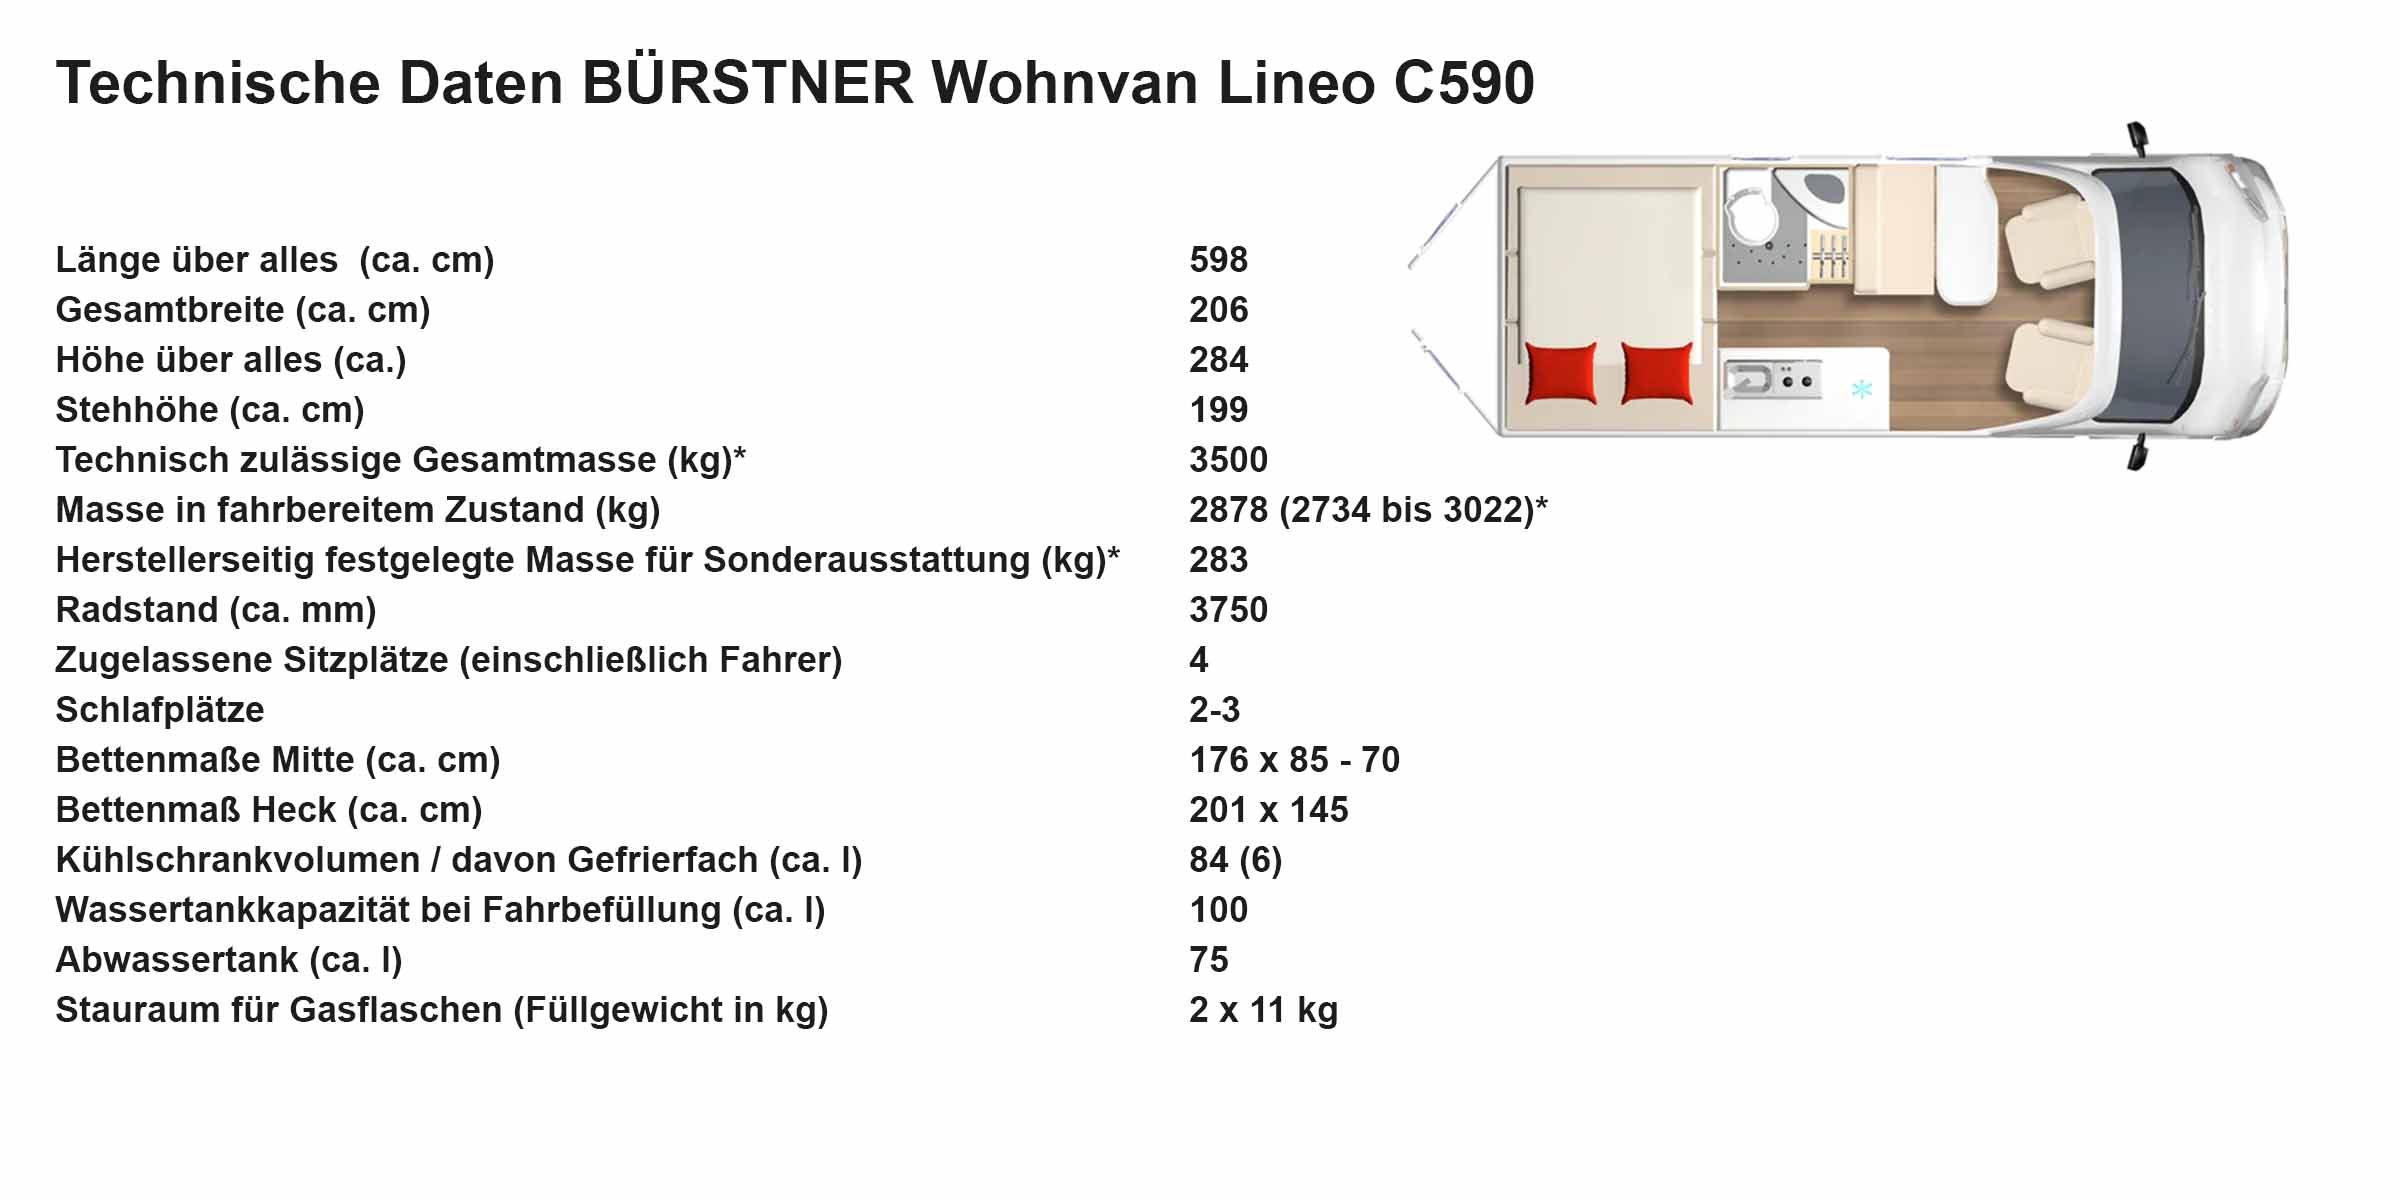 Technische Daten Lineo C590 - Reichstein & Opitz